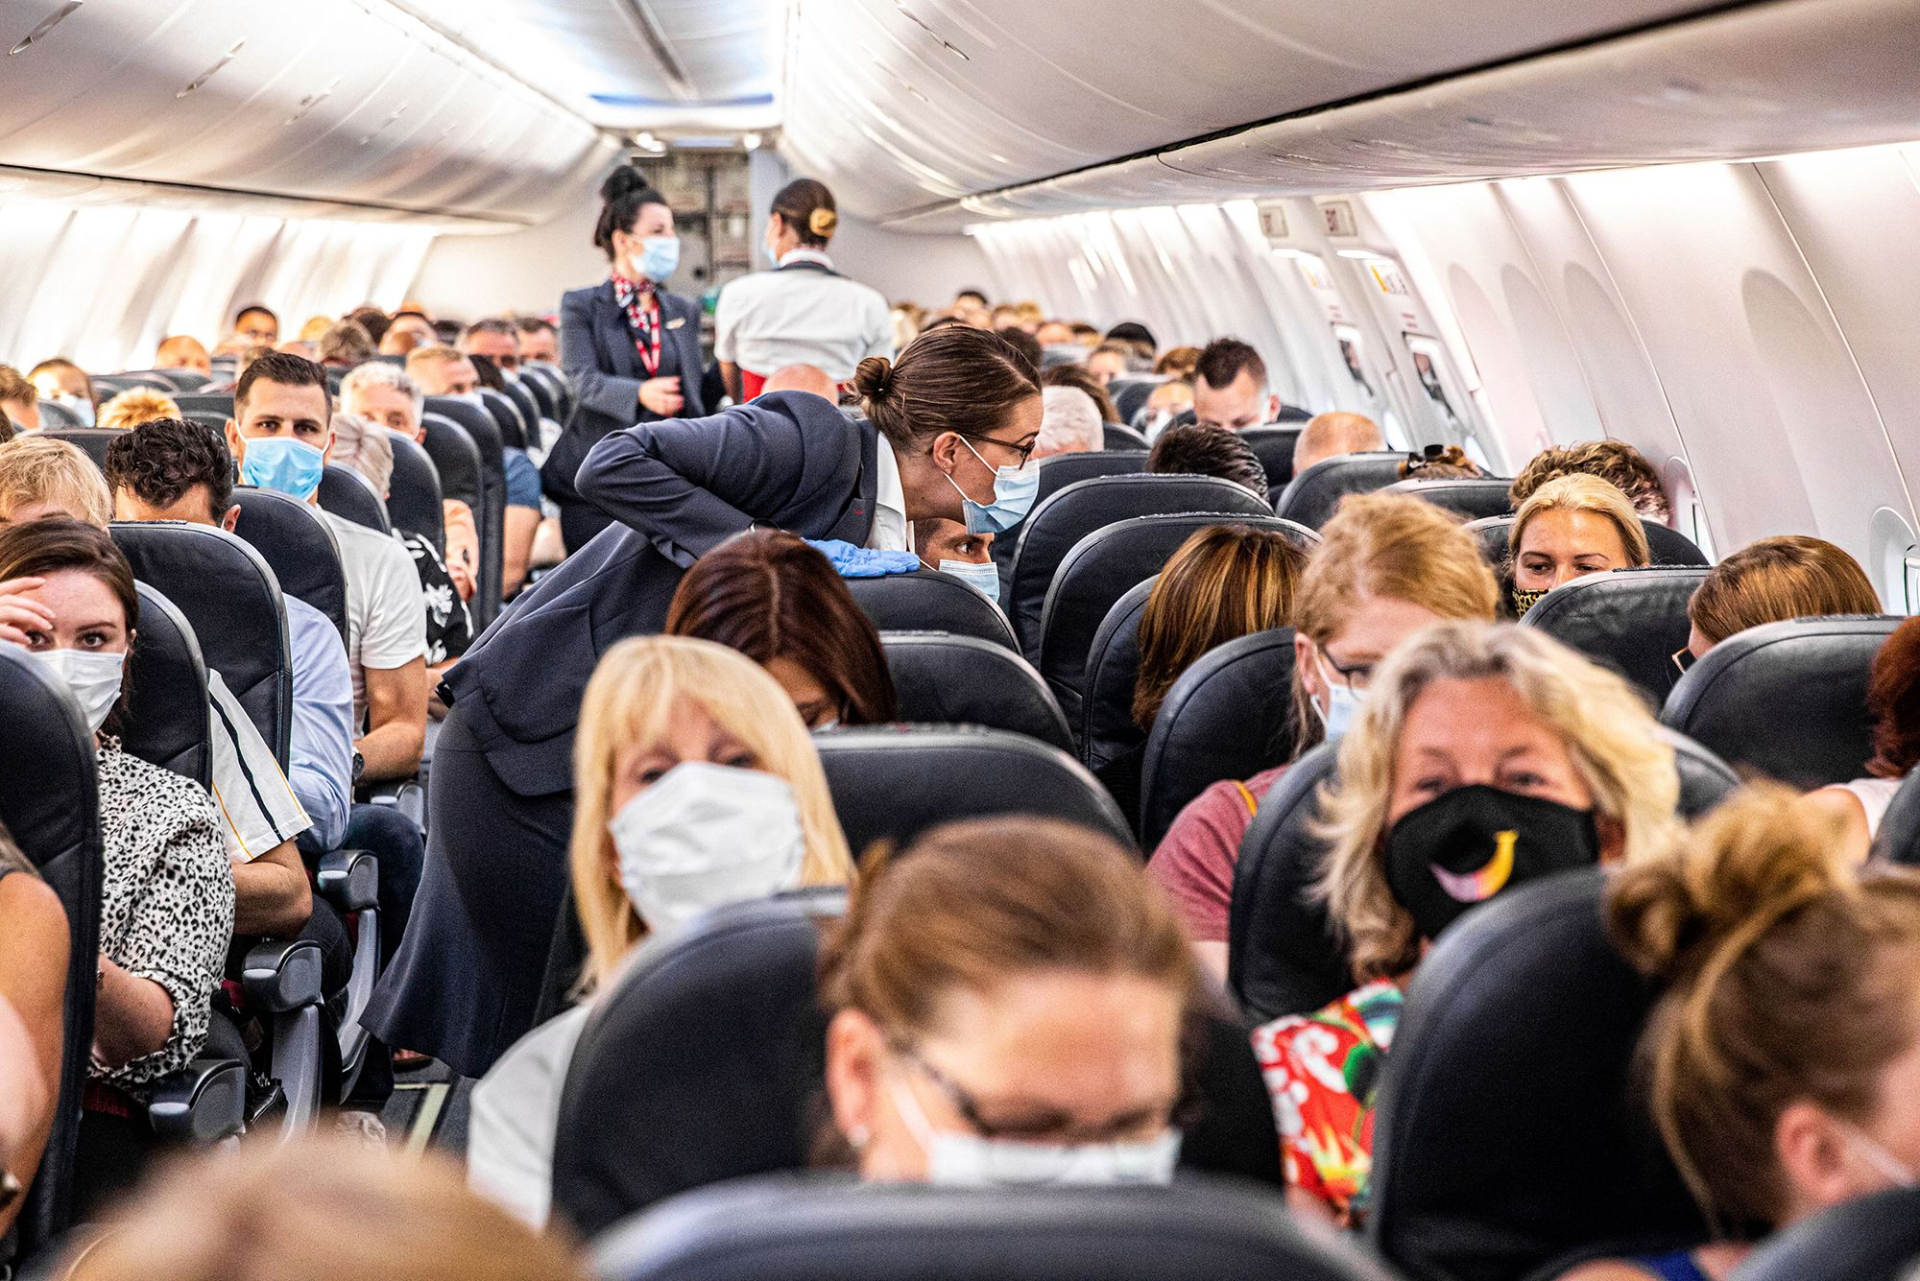 Tiếp viên hàng không sẽ xem xét và cố gắng giải quyết vấn đề đổi chỗ ngồi cho khách trên máy bay nếu có yêu cầu phù hợp